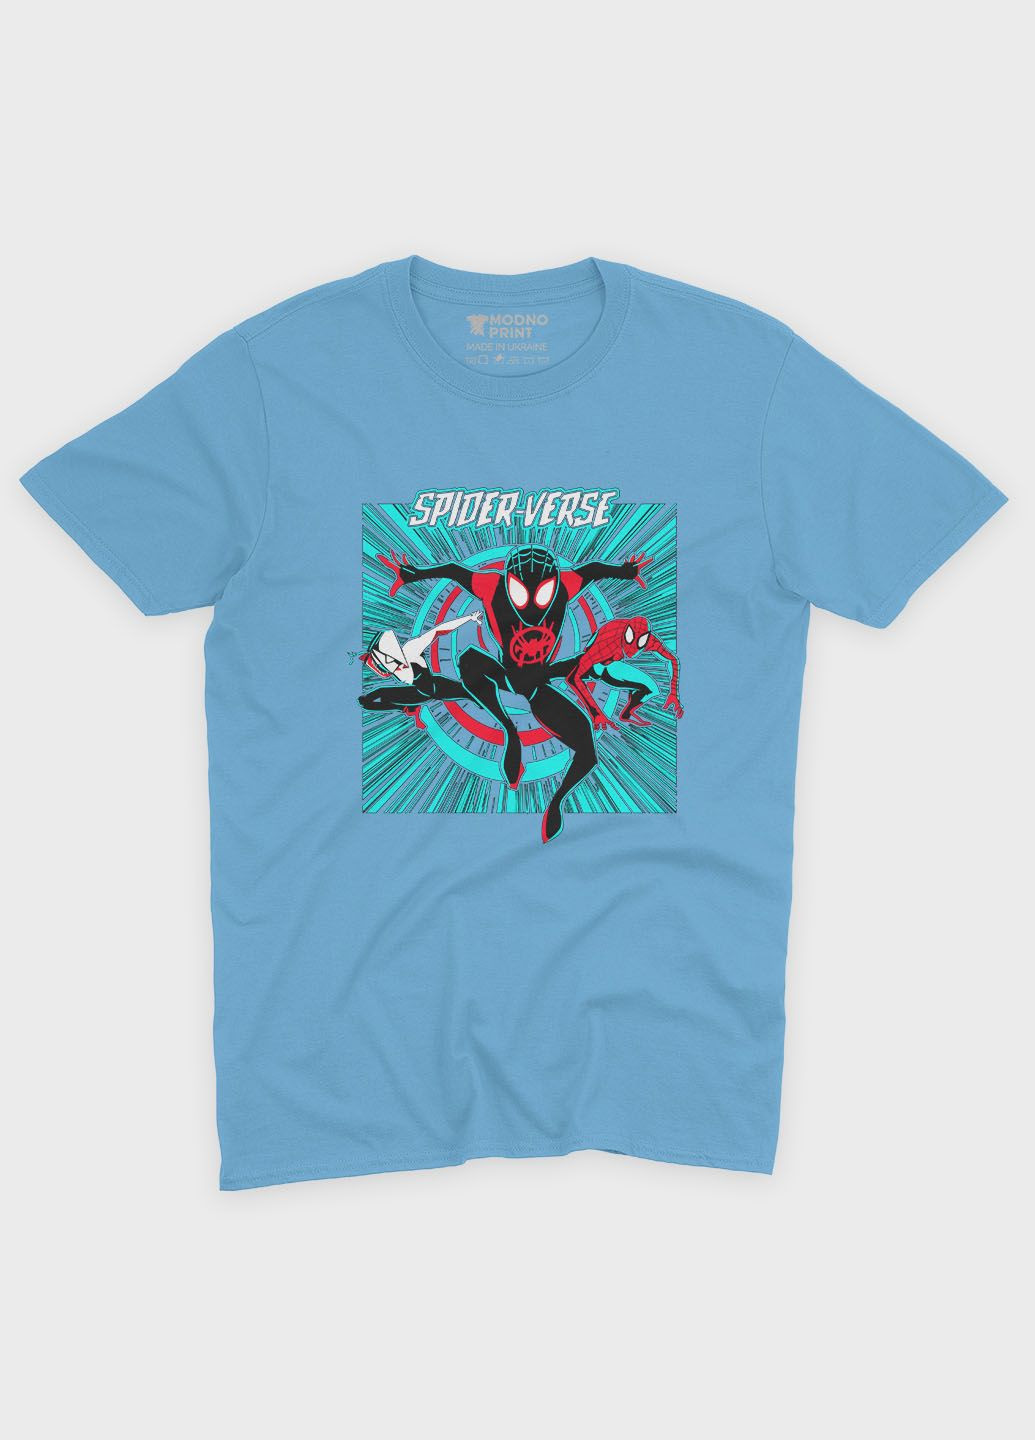 Голубая демисезонная футболка для мальчика с принтом супергероя - человек-паук (ts001-1-lbl-006-014-055-b) Modno